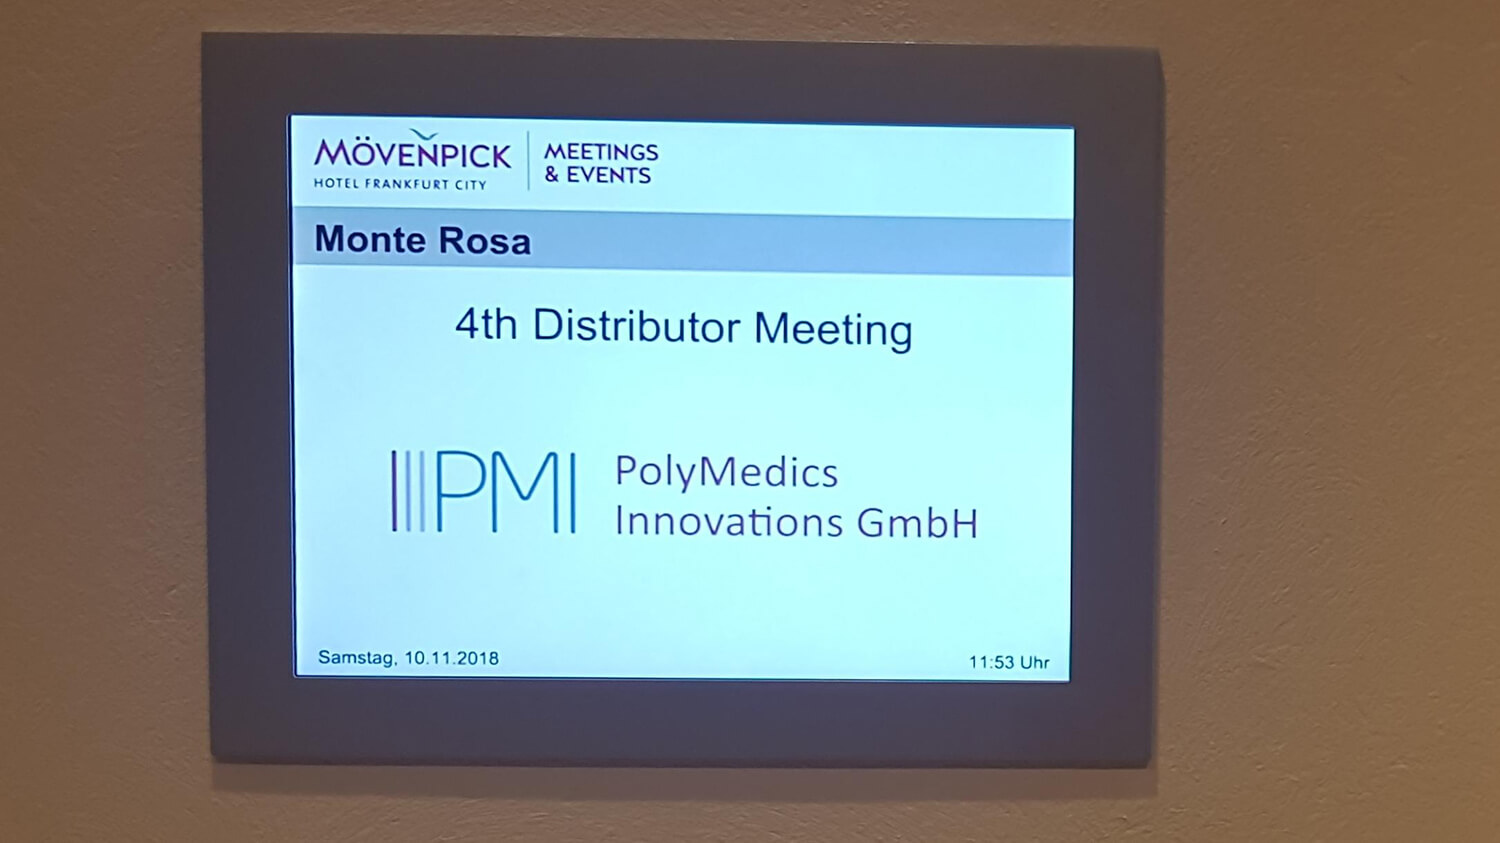 “Polymedics GMBH” Suprathel 4. Distrübütör Toplantısı / Kasım 2018 Frankfut, Almanya